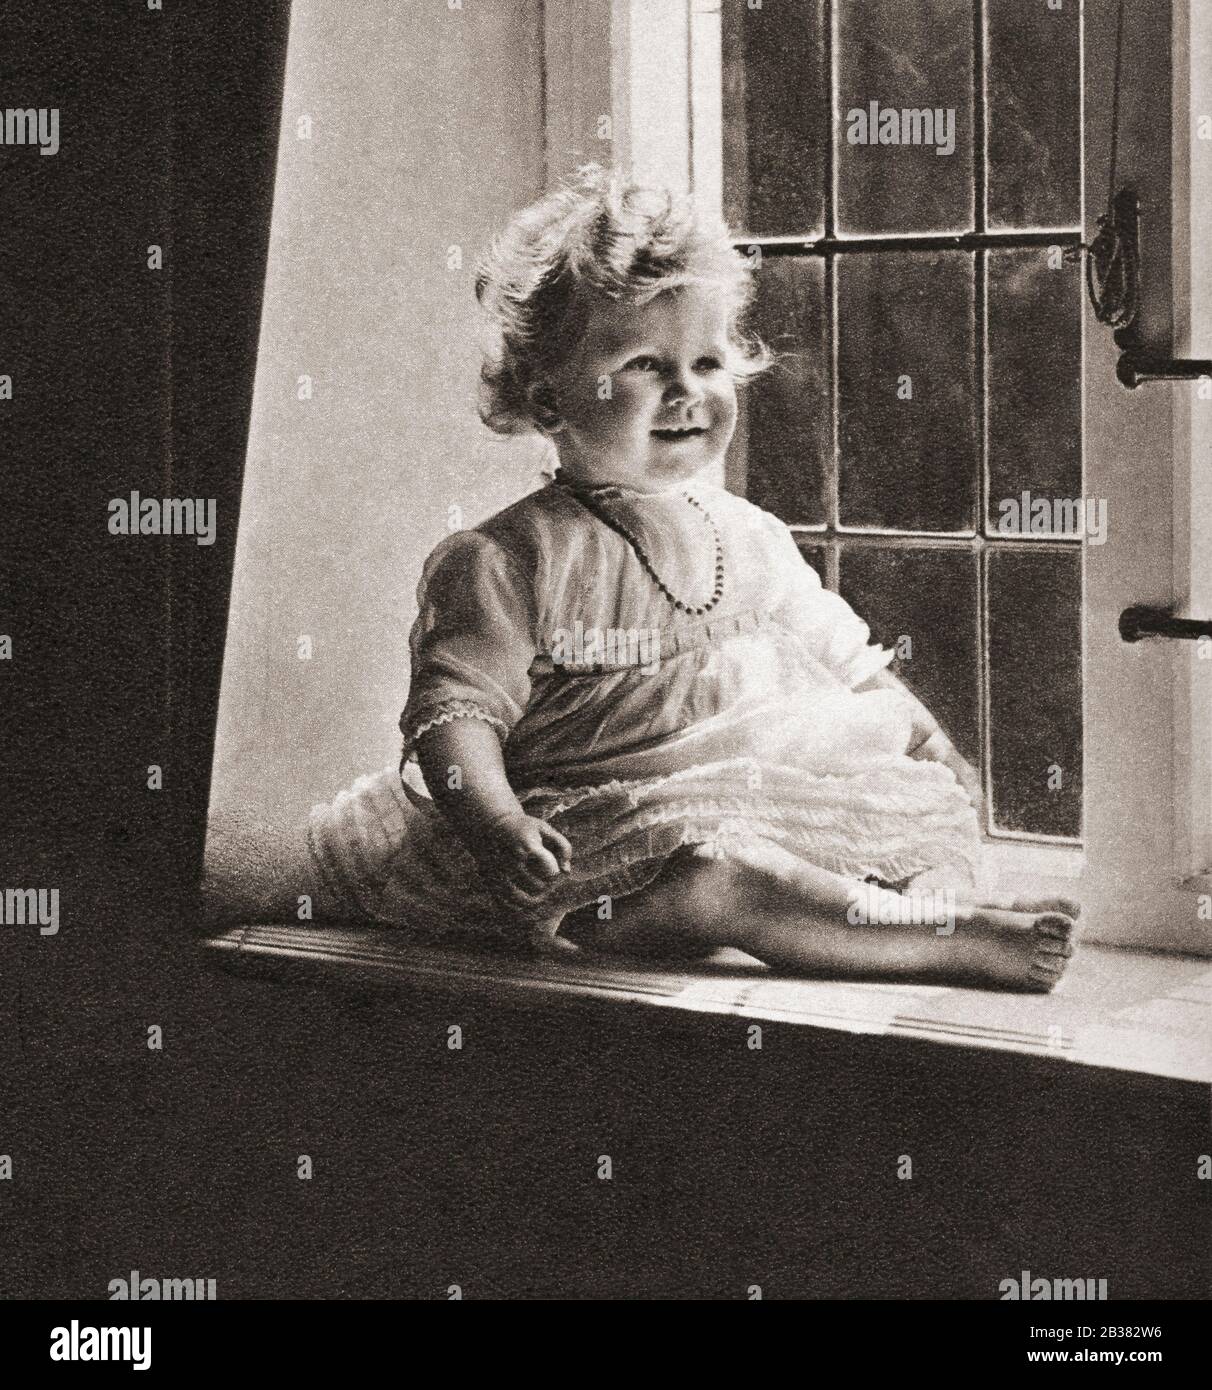 Prinzessin Elizabeth von York zukünftige Elizabeth II, 1926 - 2022. Königin des Vereinigten Königreichs. Hier im Alter von einem Jahr gesehen. Aus dem Krönungsbuch, erschienen 1937. Stockfoto